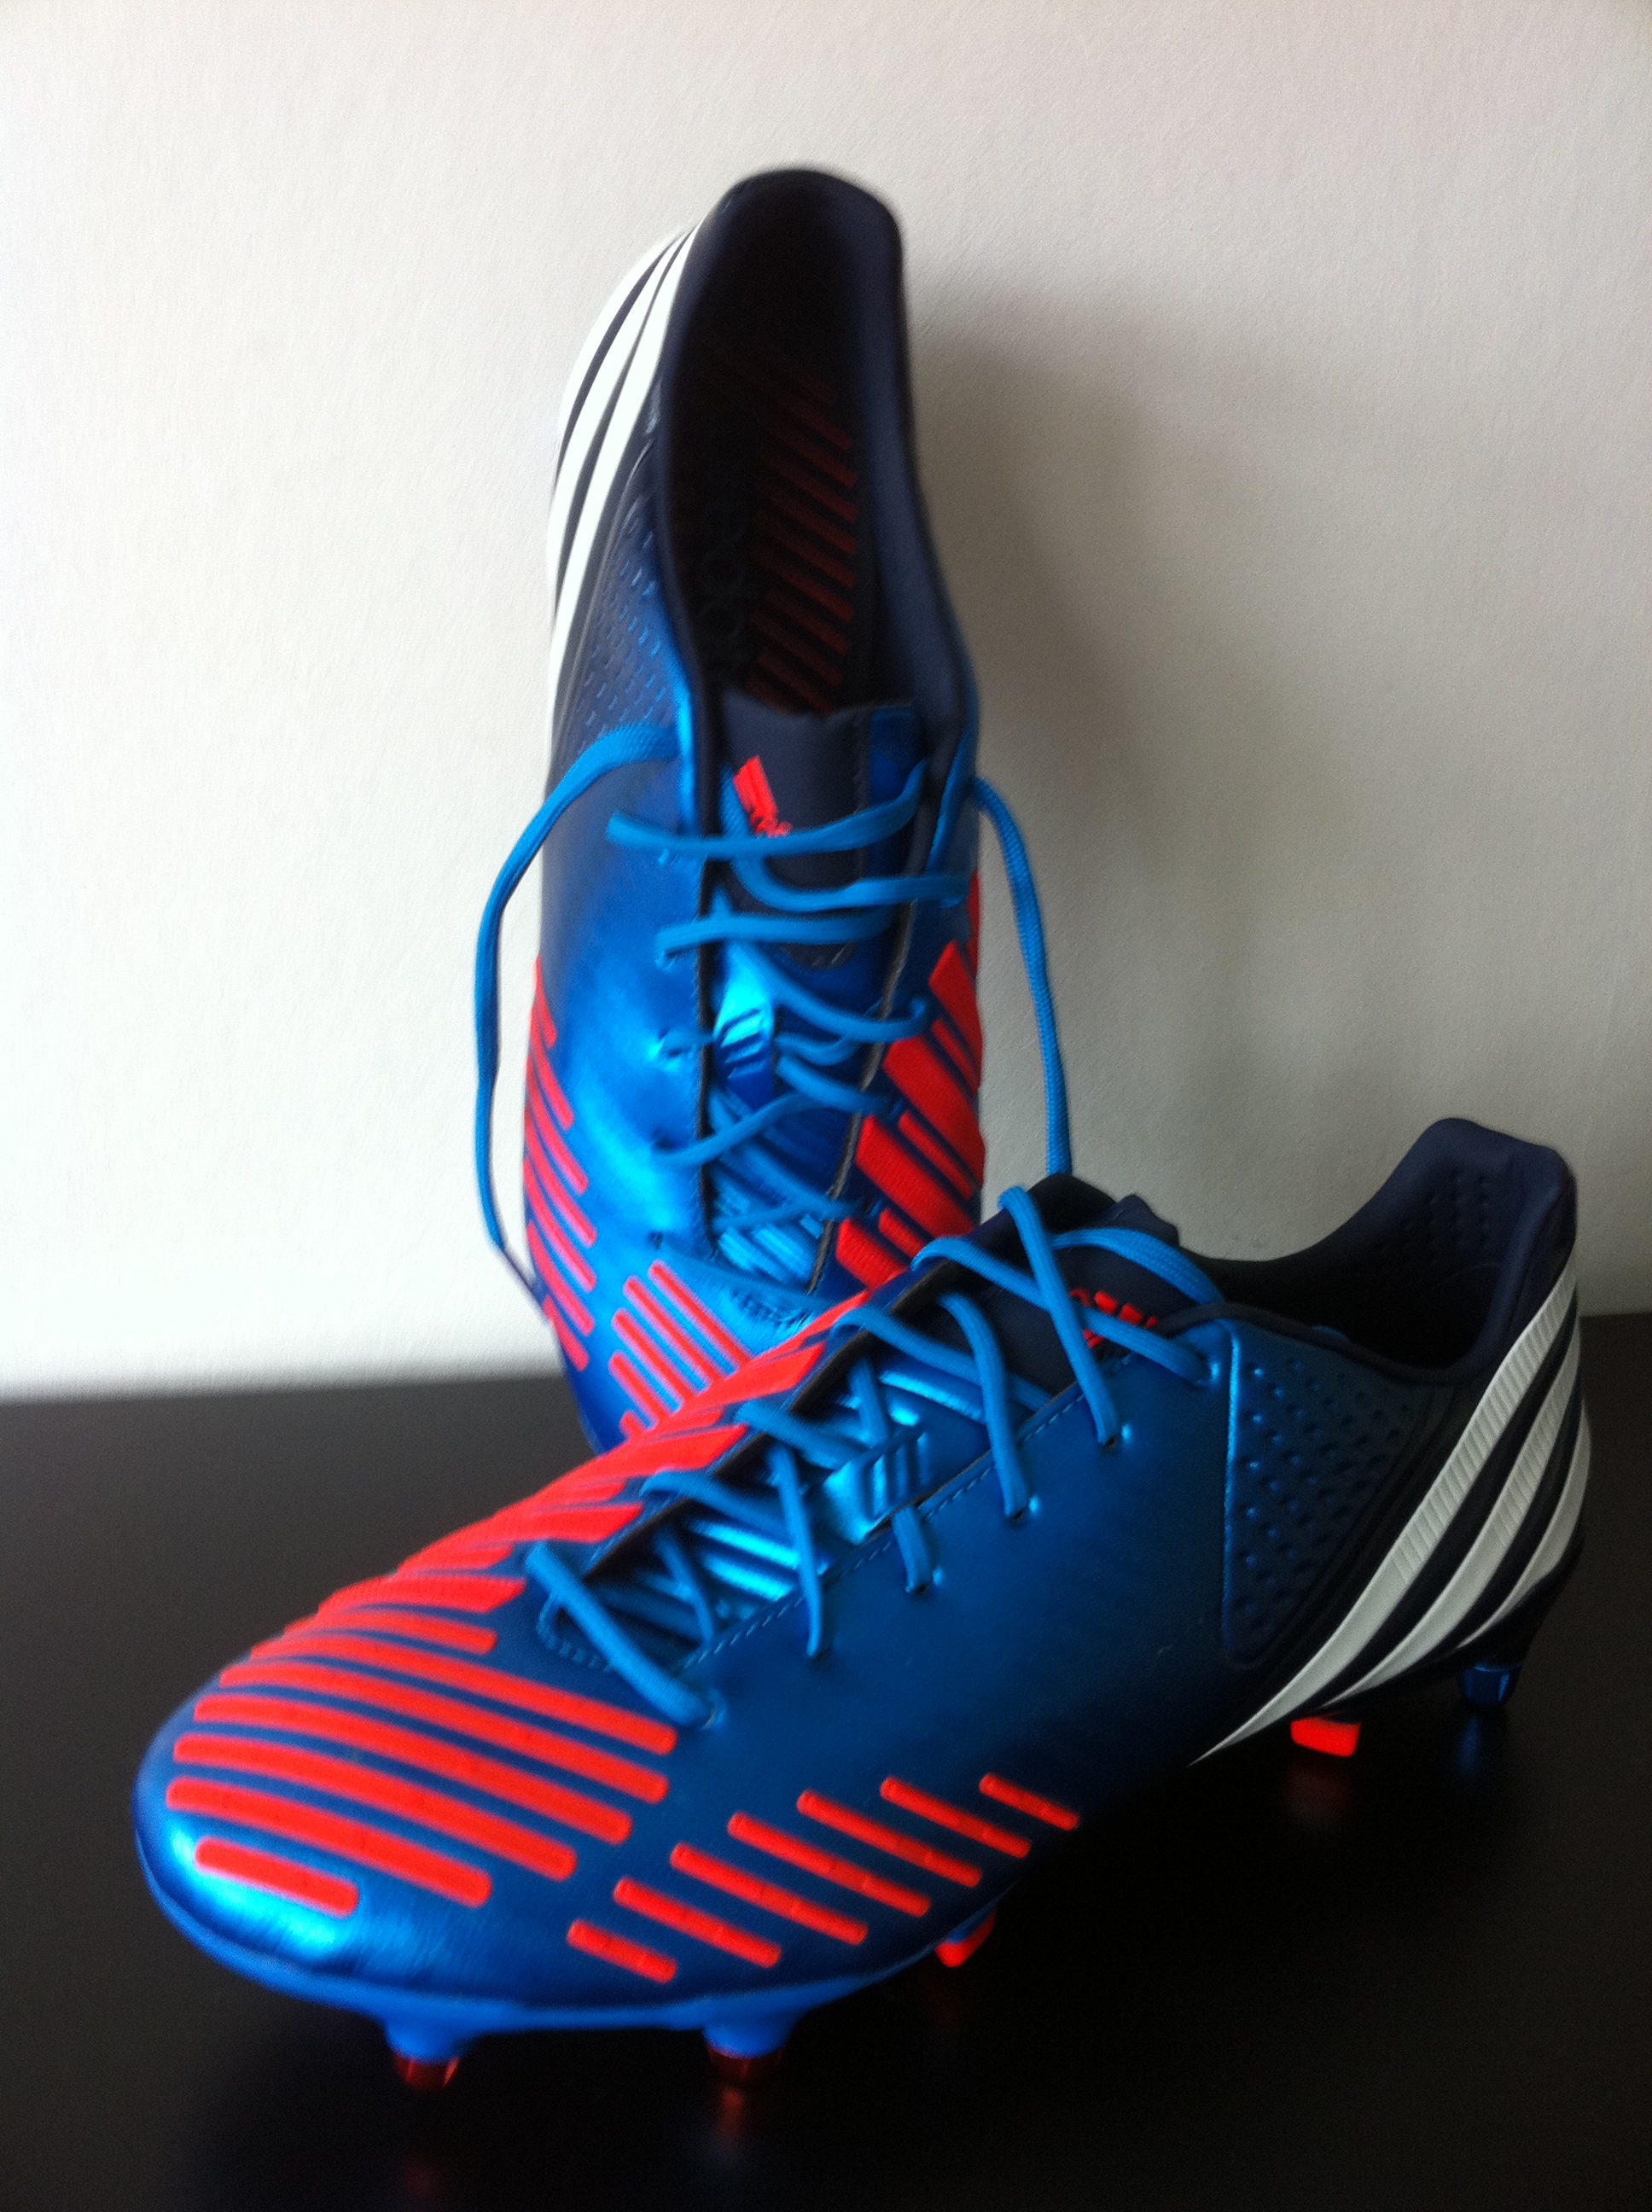 adidas 2012 football boots